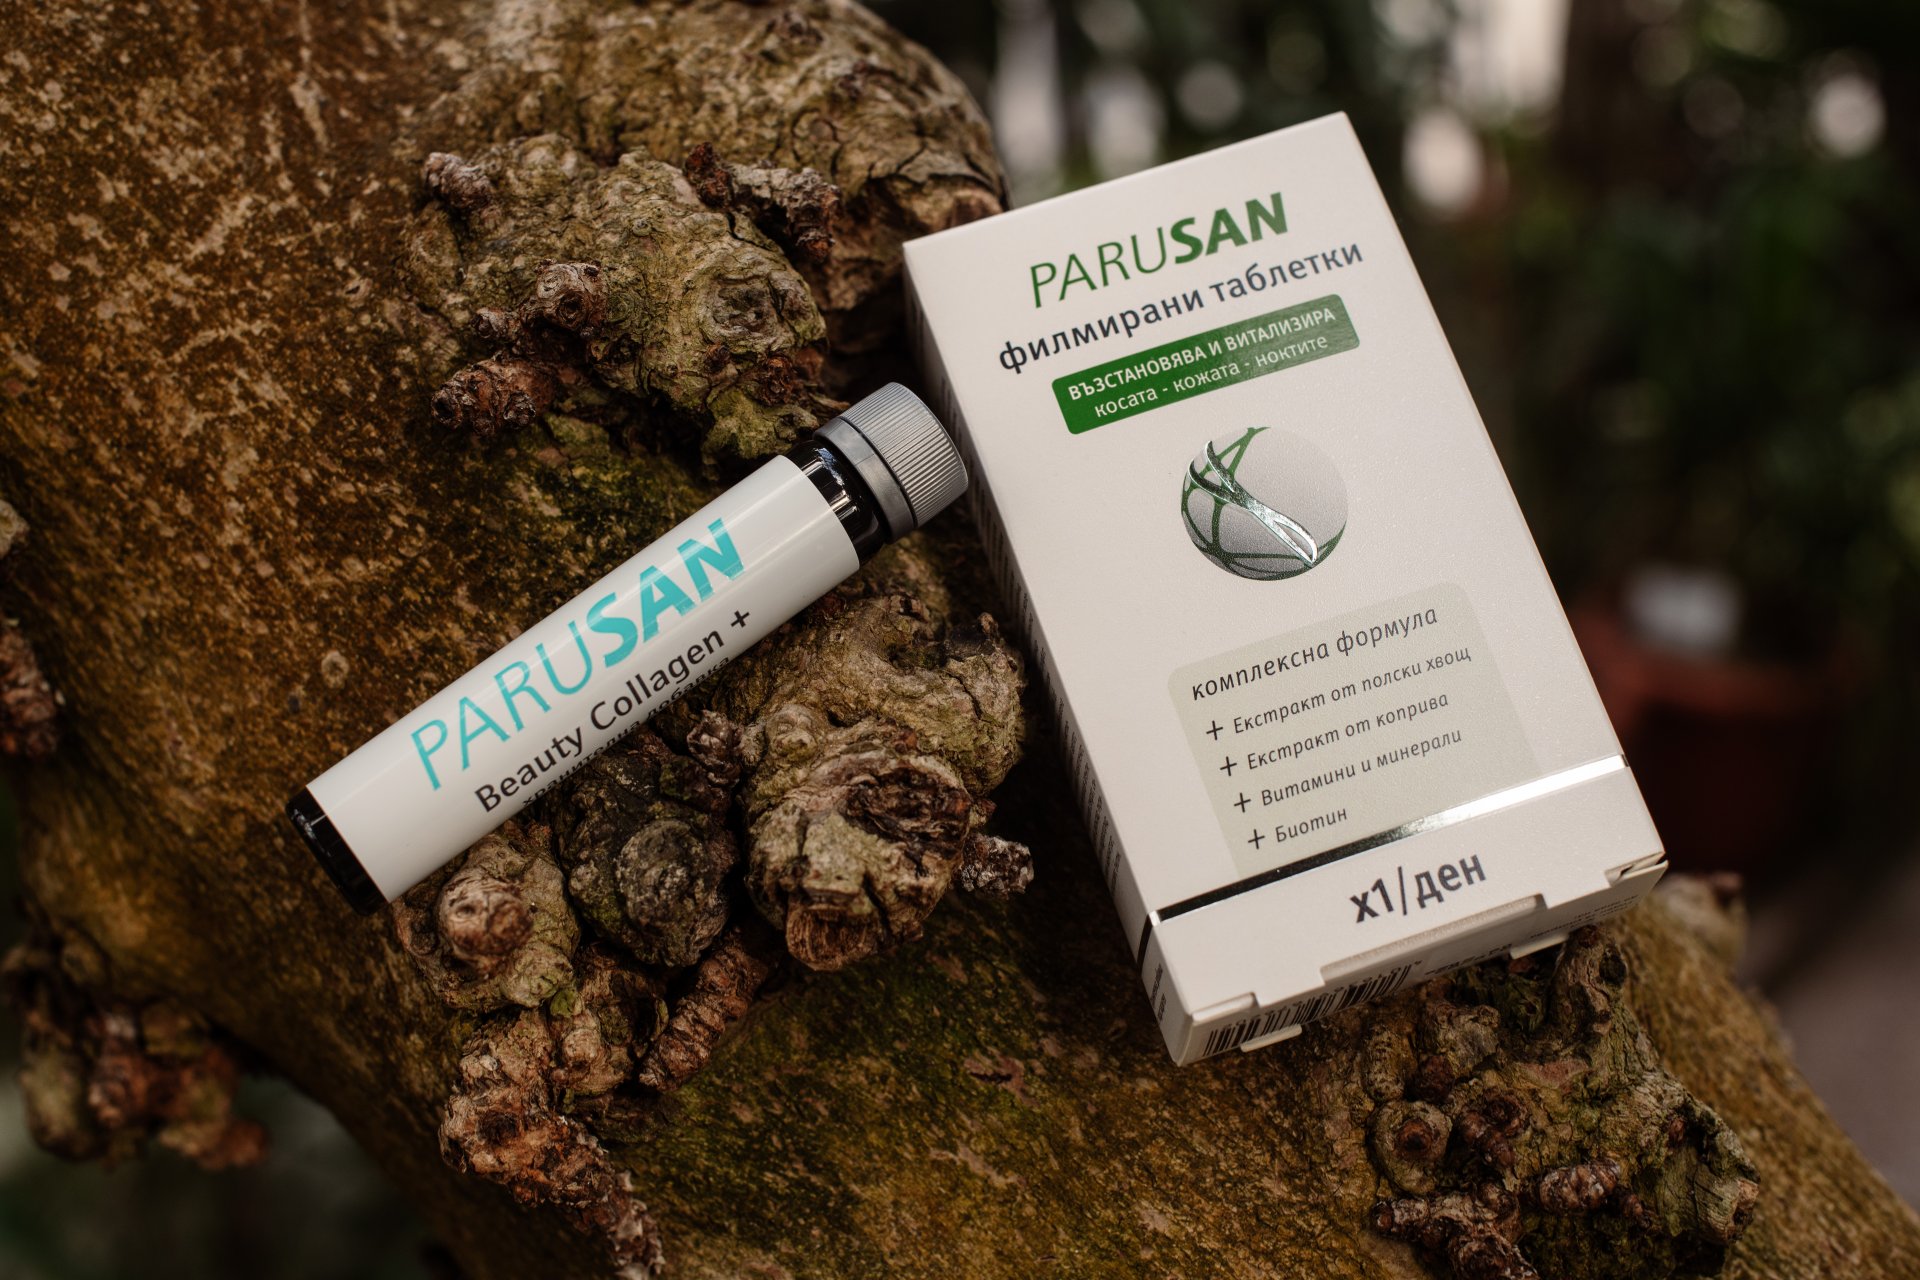 Флаконите за пиене Parusan® Beauty Collagen + се грижат за здравословните нива на колагена в тялото и така допринасят за здрава кожа, коса и нокти.